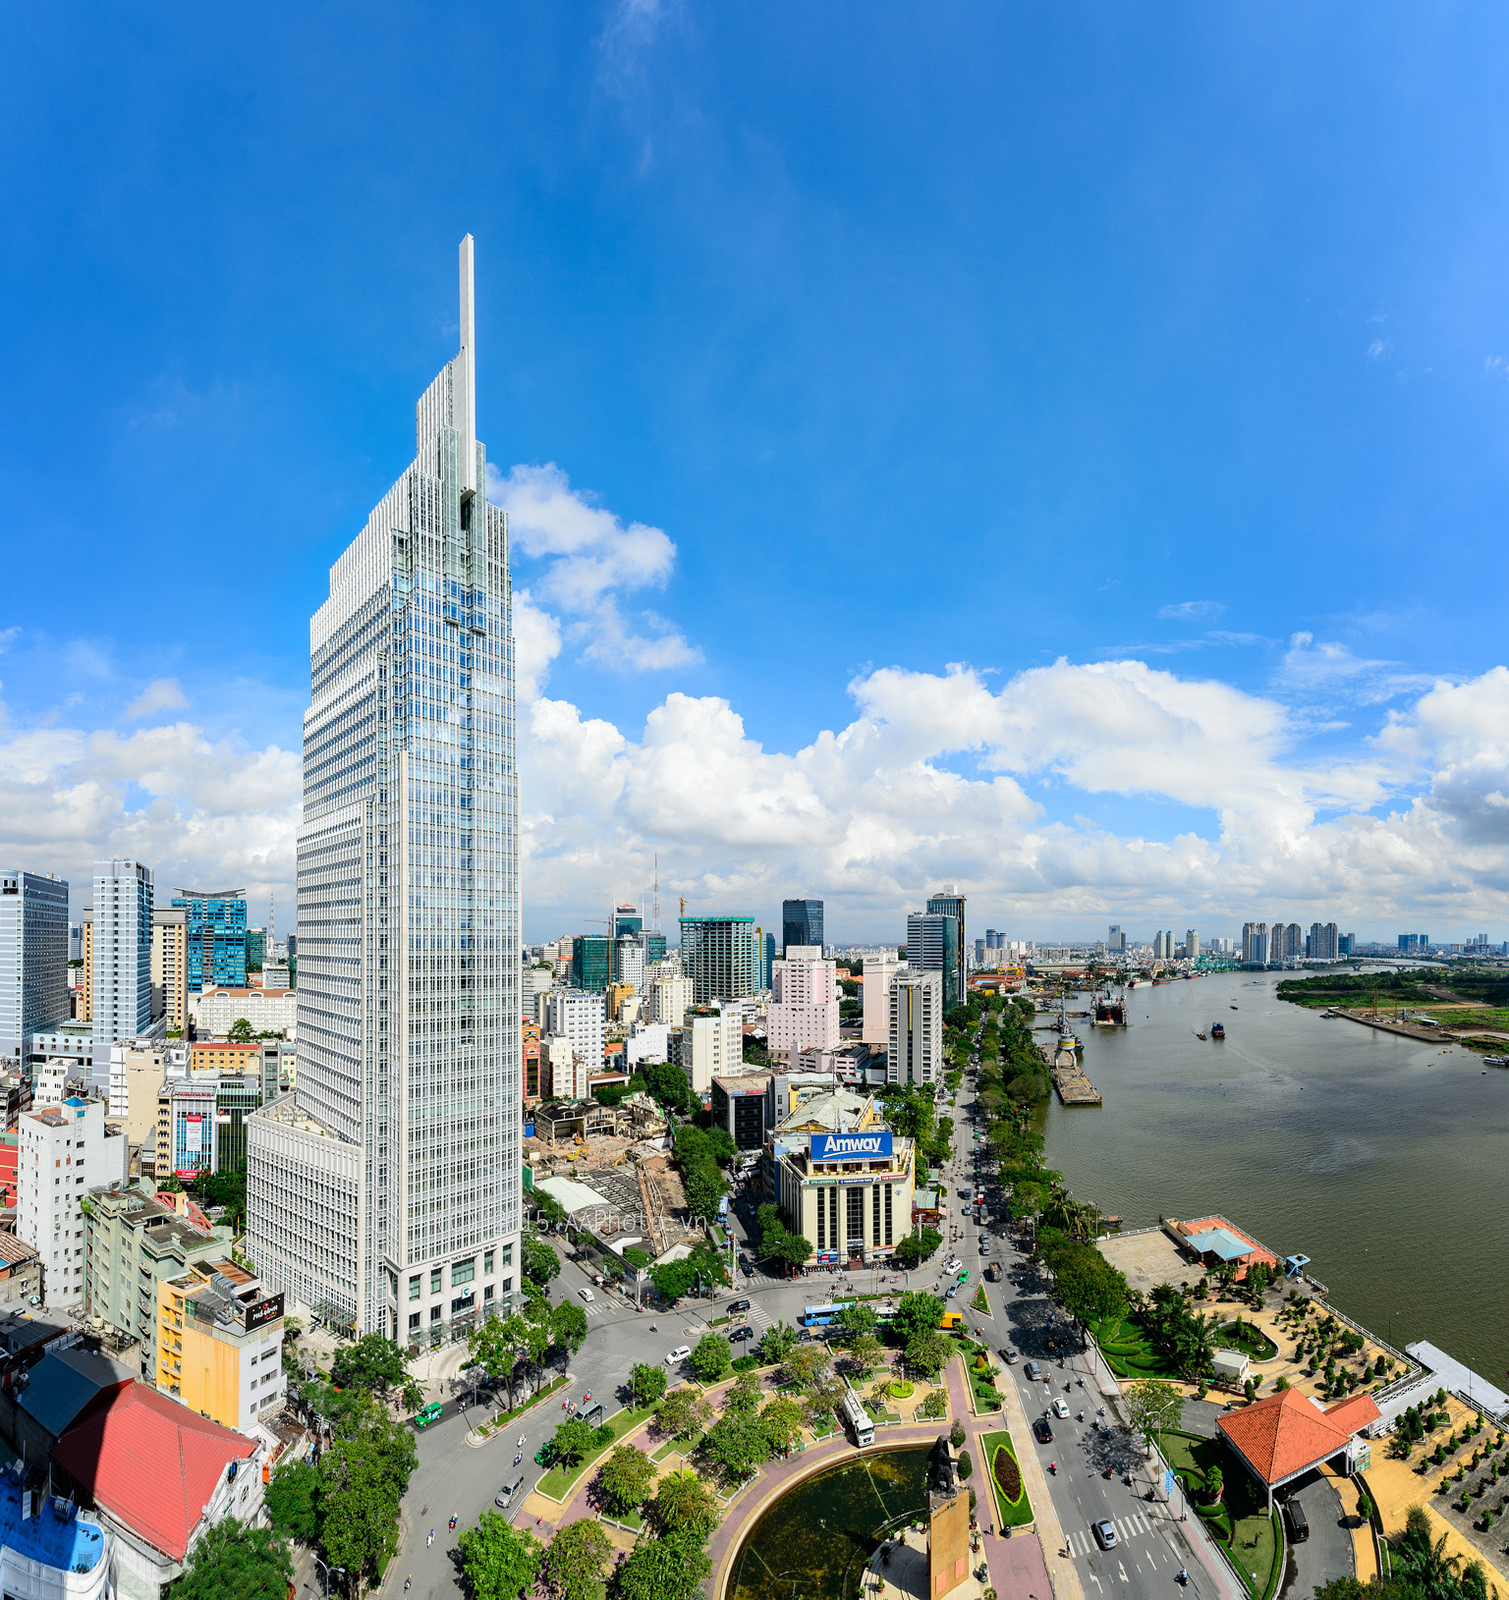 Bán cao ốc Chuẩn A | Cao ốc Vietcombank Tower số 5 Công trường Mê Linh, PhườngBến Nghé, quận1, Tp.HCM